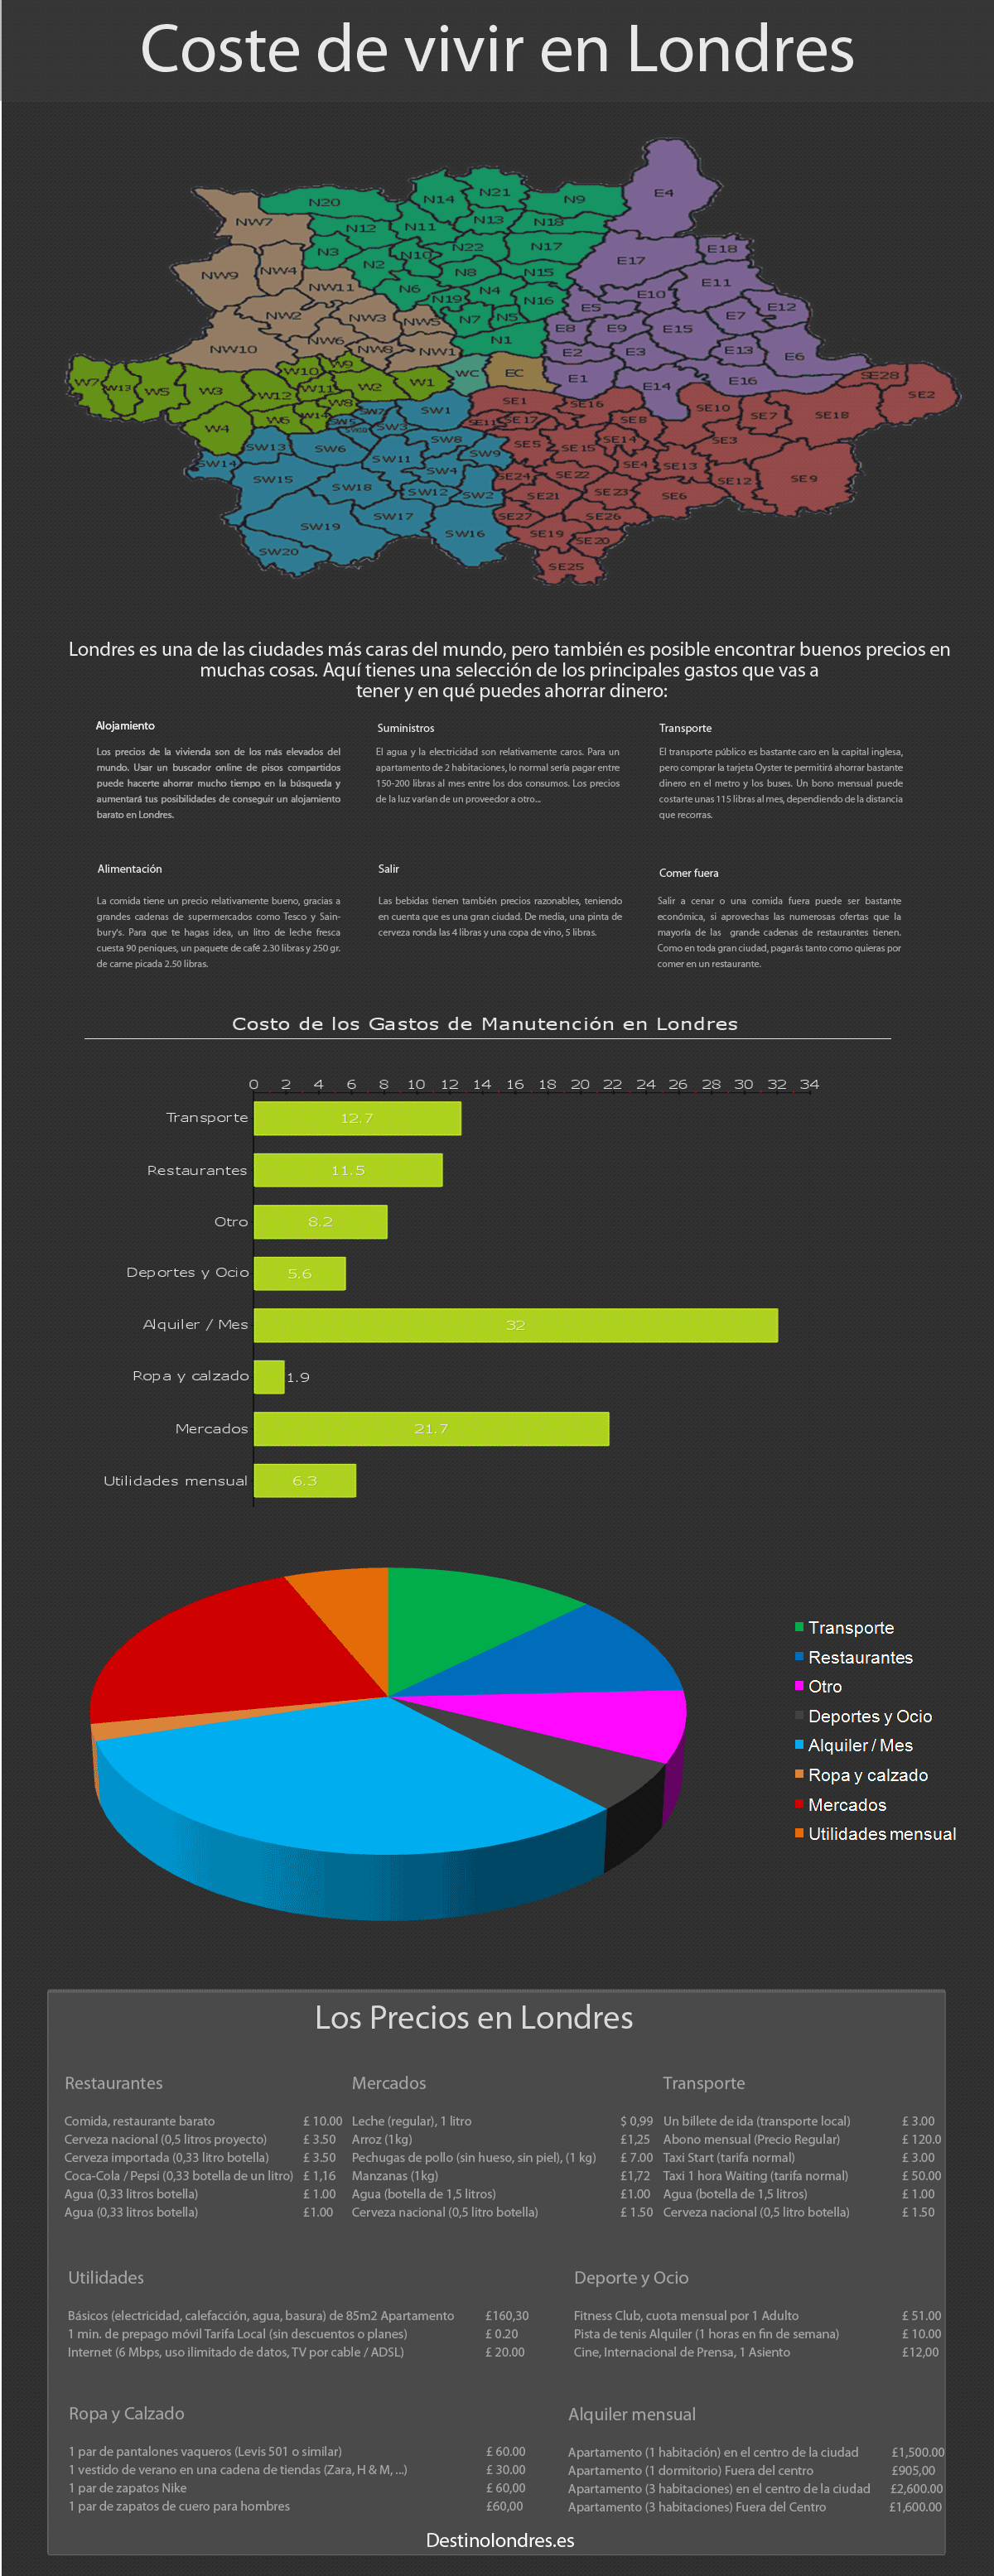 Costo de Los Gastos de Manutencion en Londres Infographic